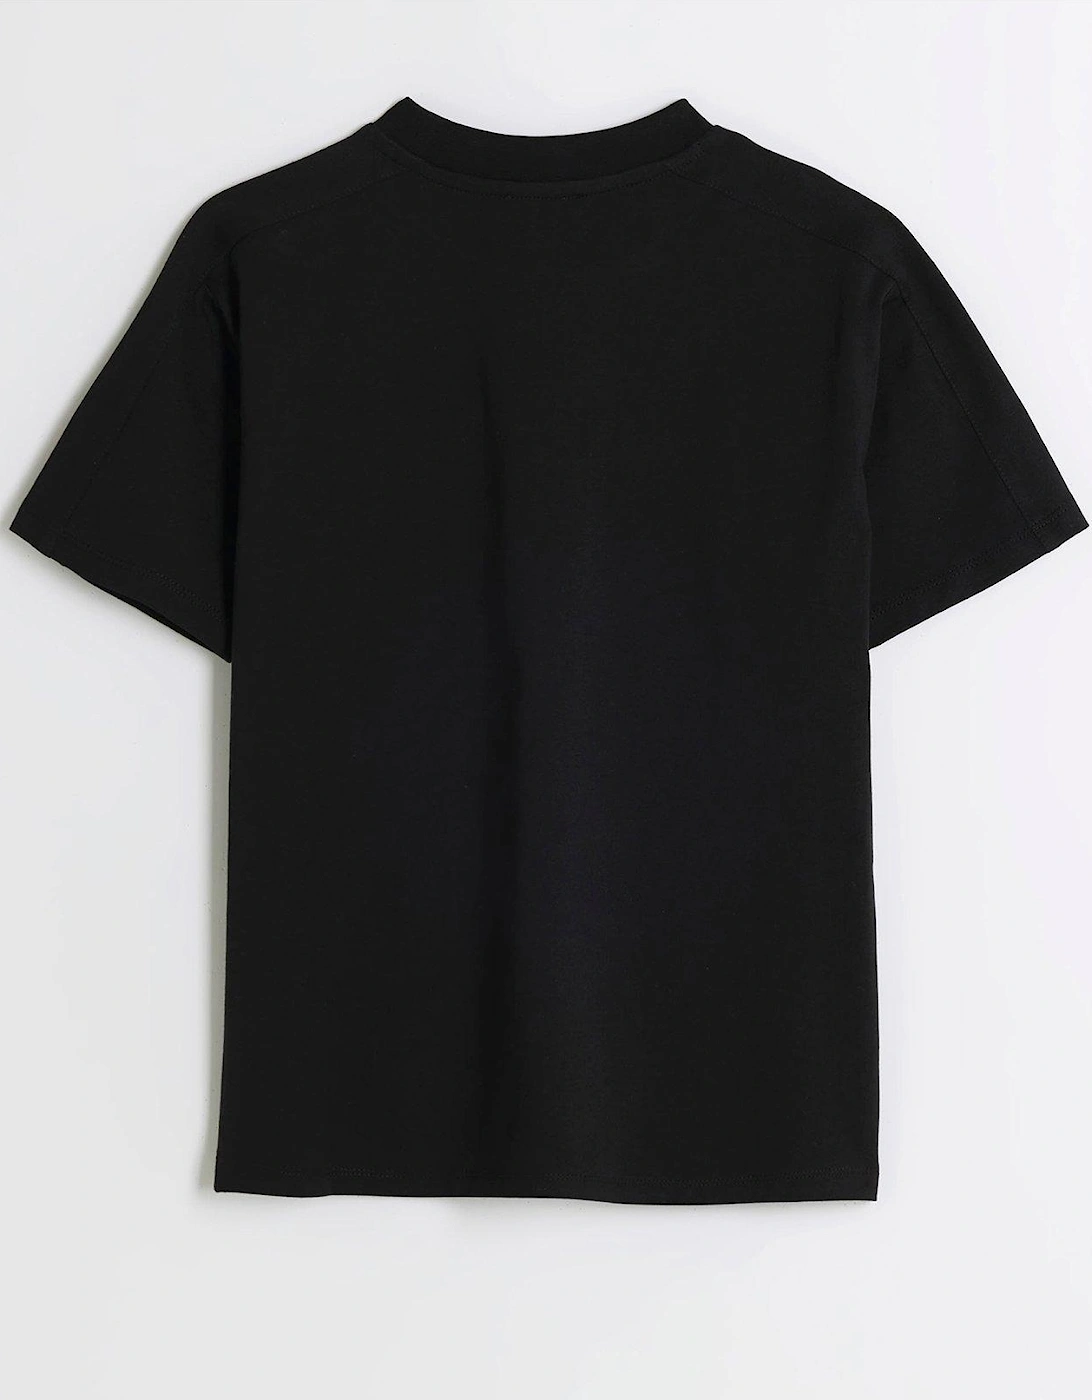 Boys Monogram T-shirt - Black